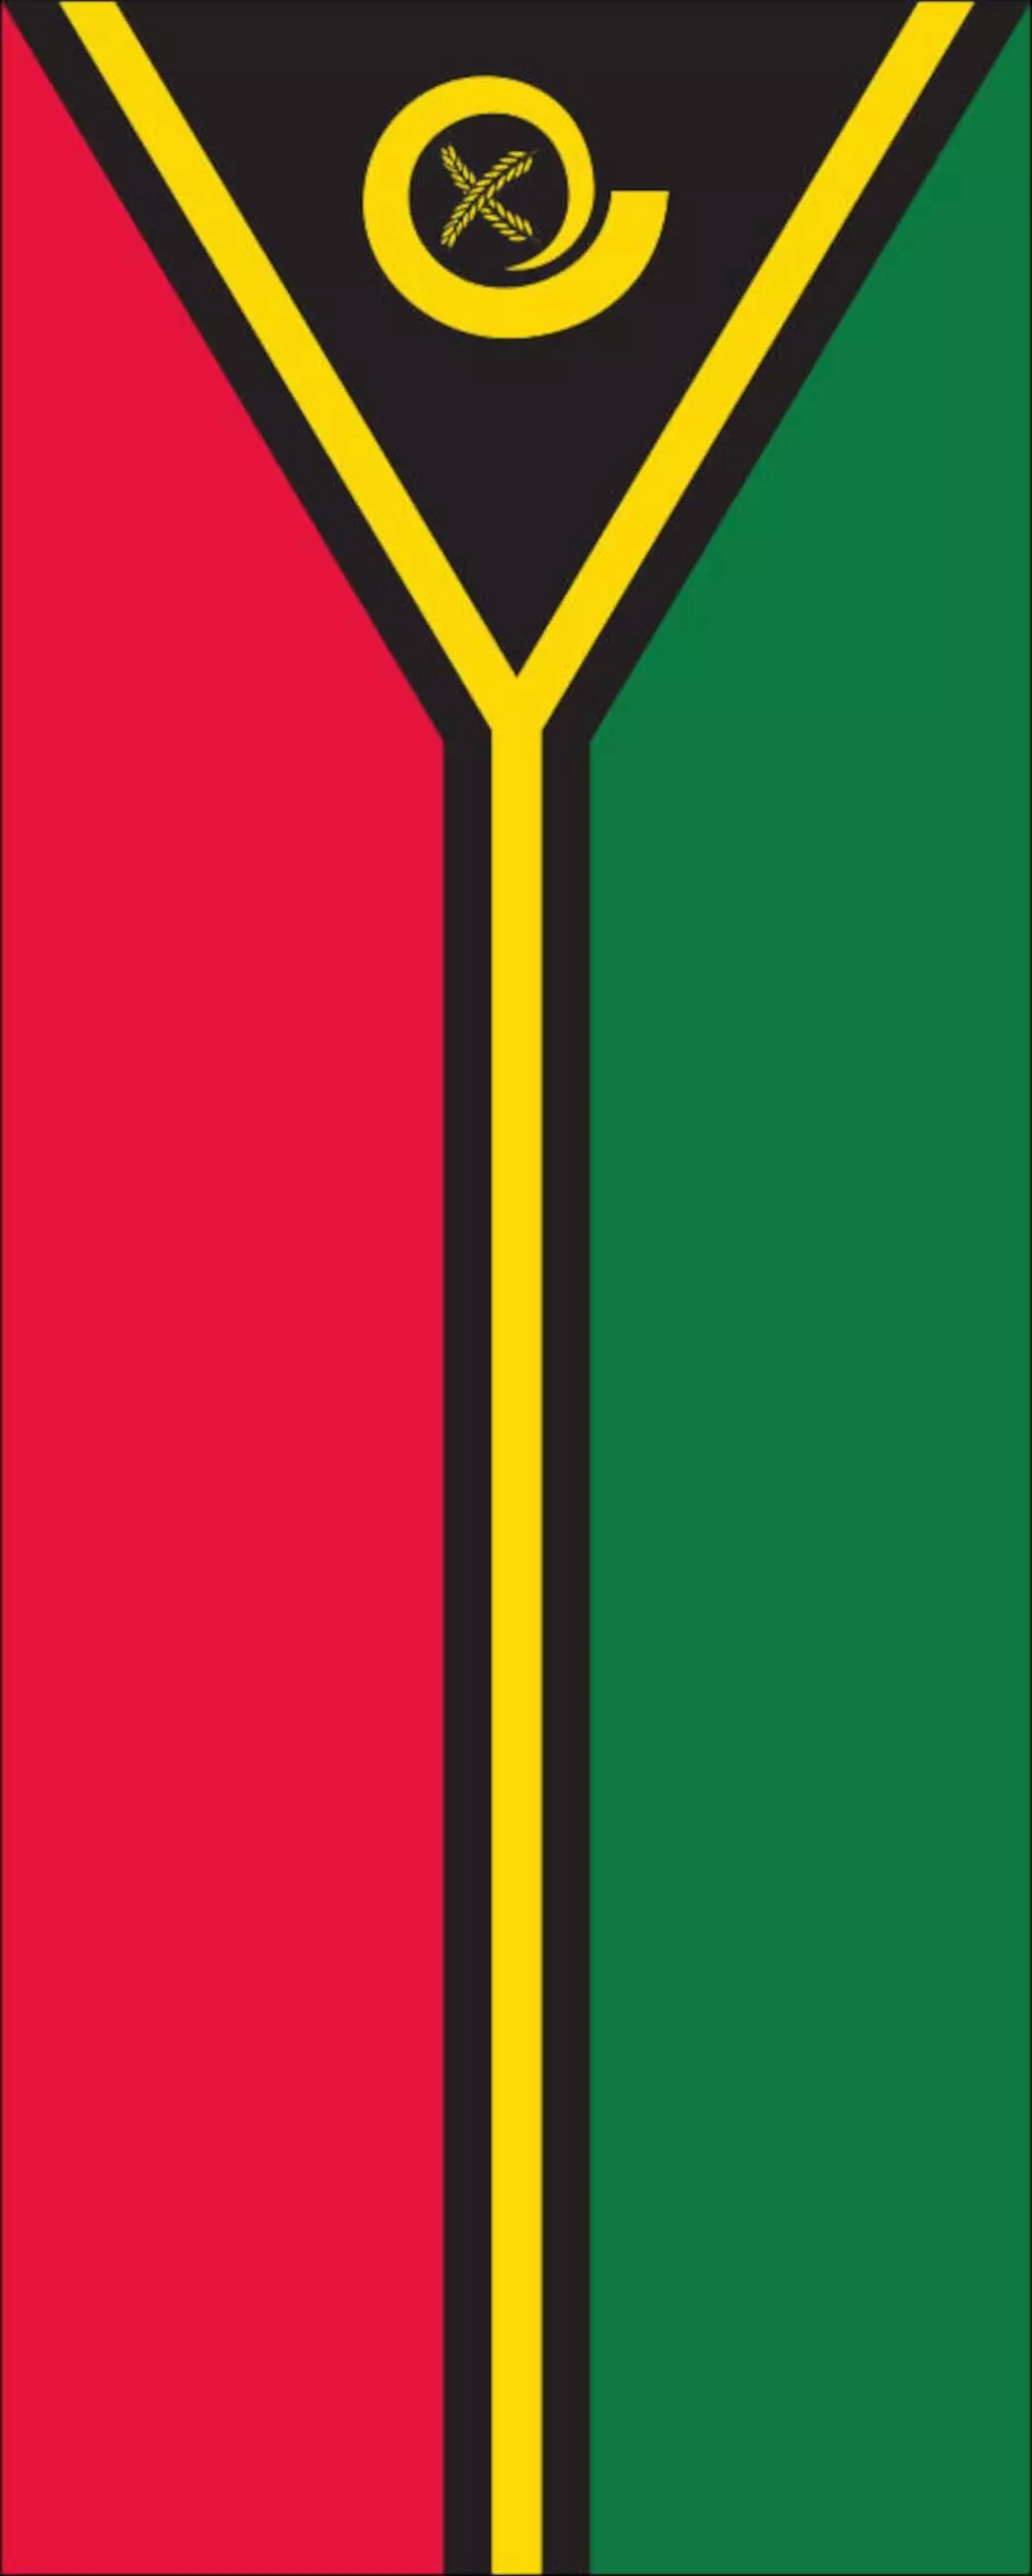 Flagge Vanuatu